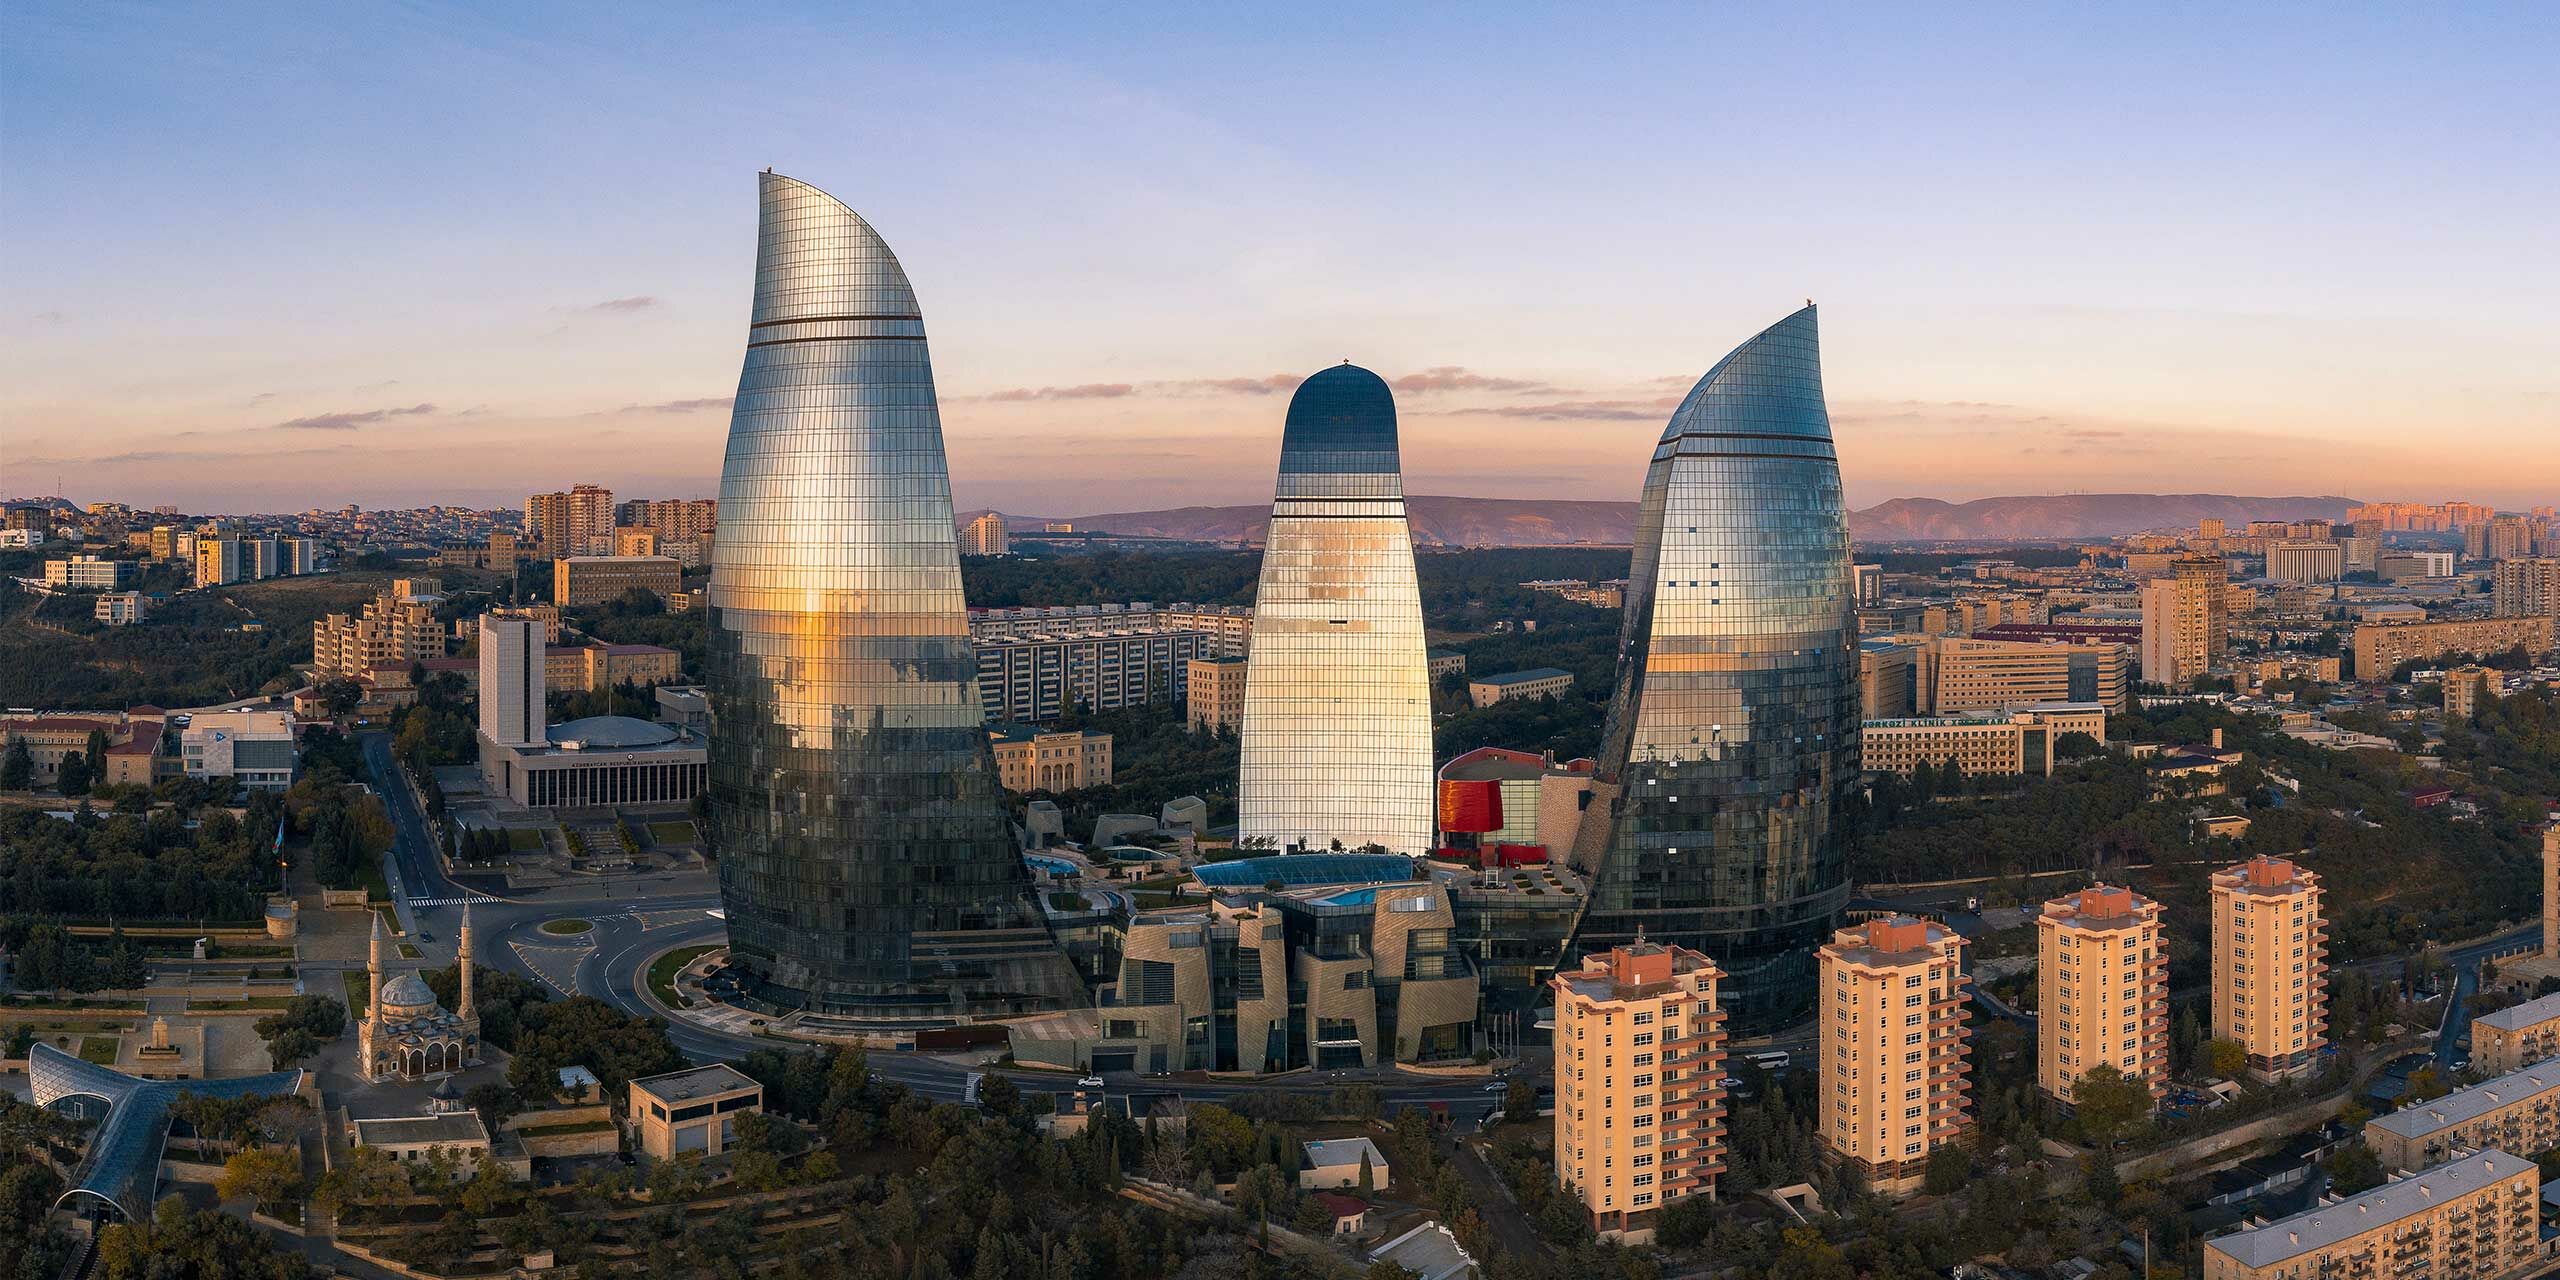 В Баку пройдет международная сейсмологическая конференция